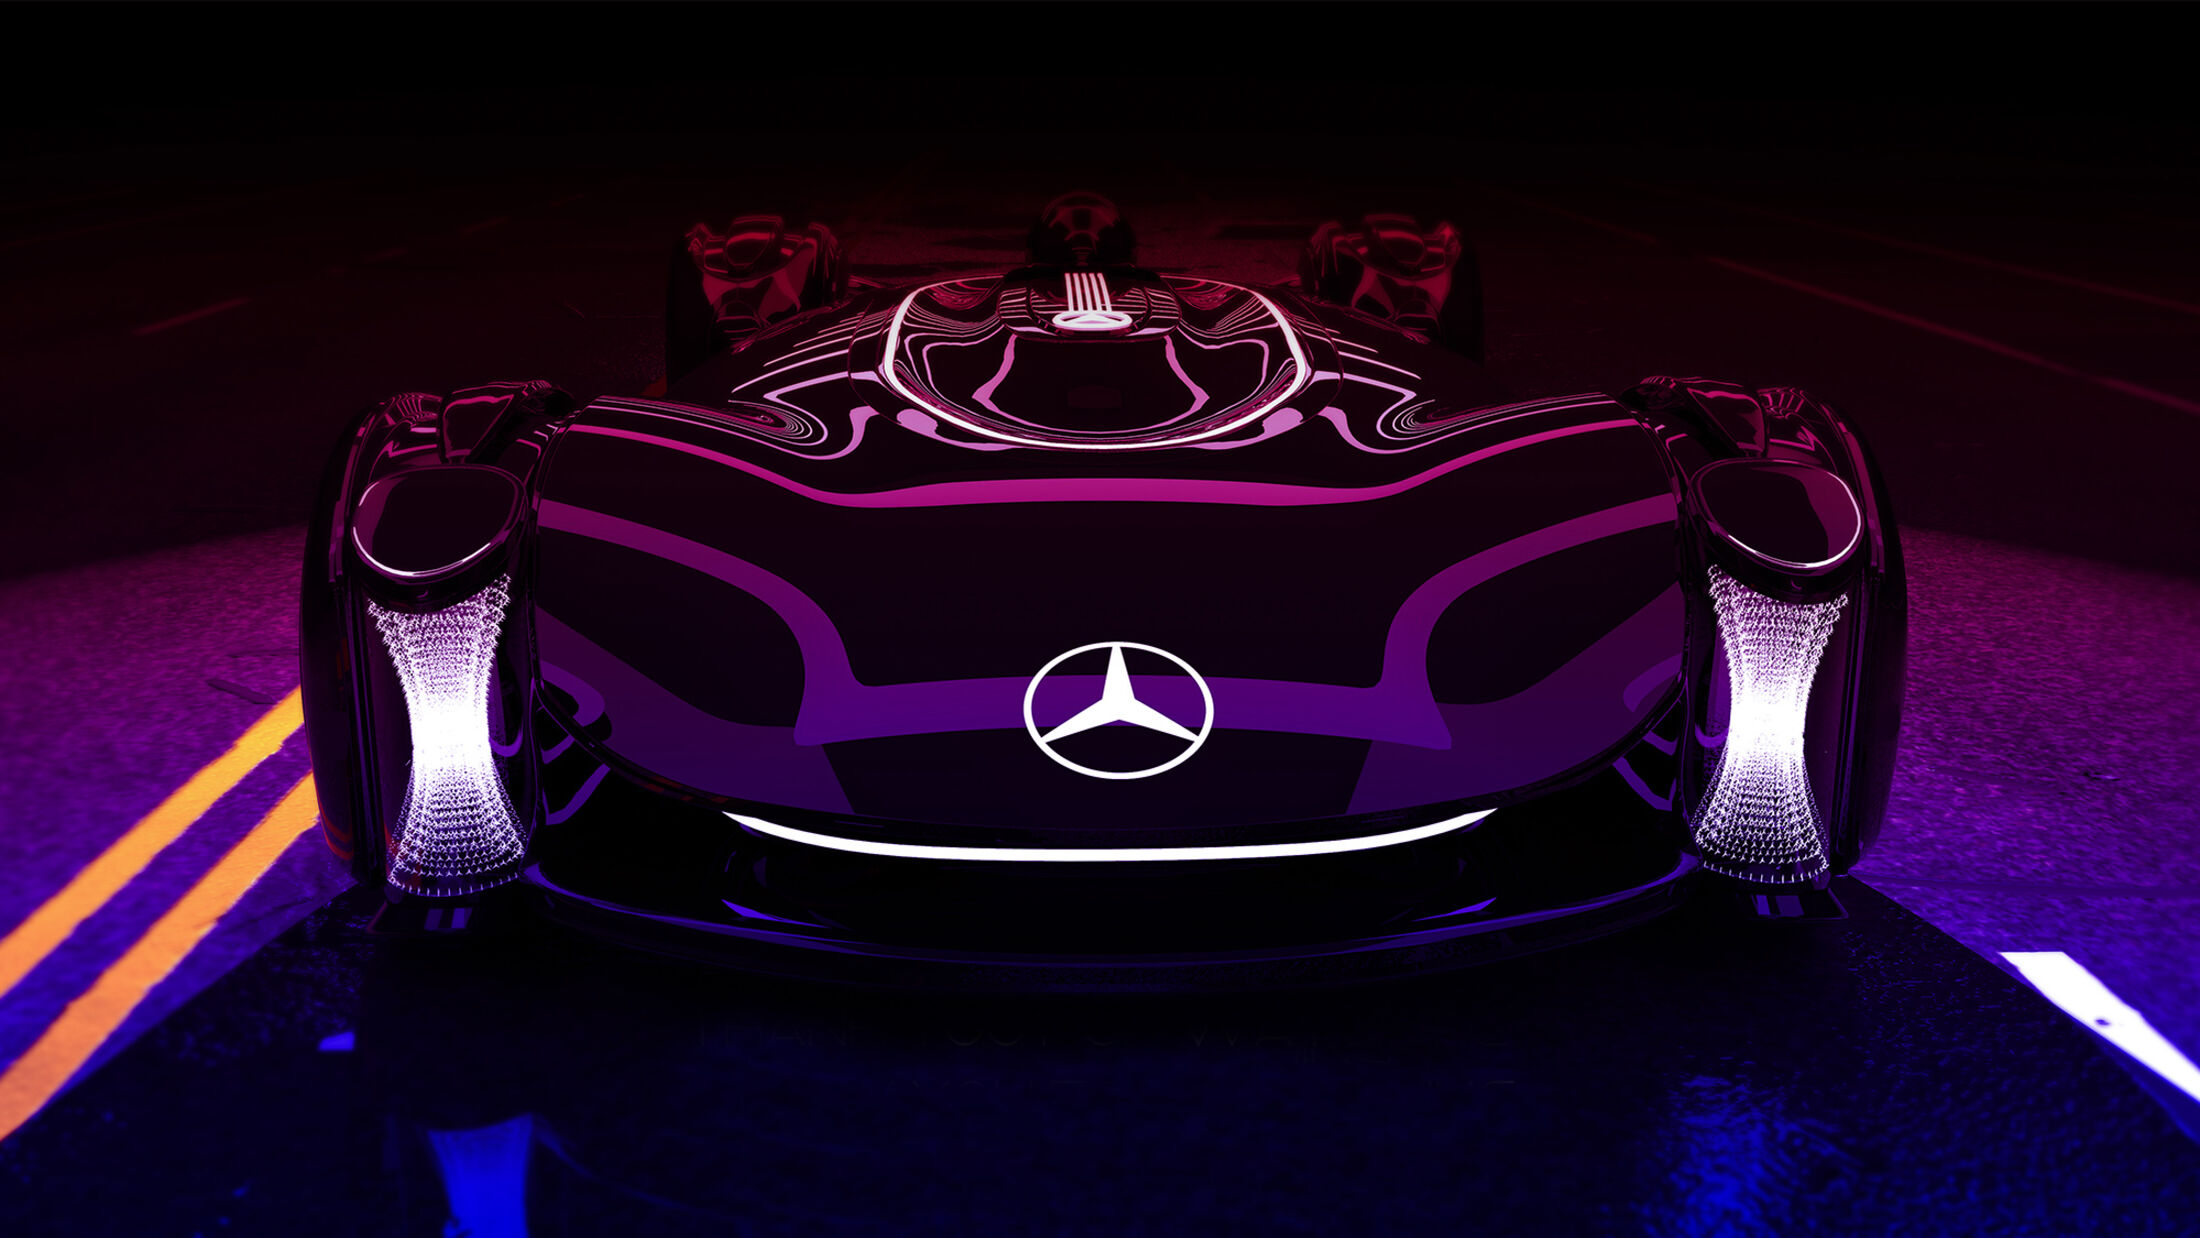 Rennserie: Mercedes Vision Magnet Concept Design